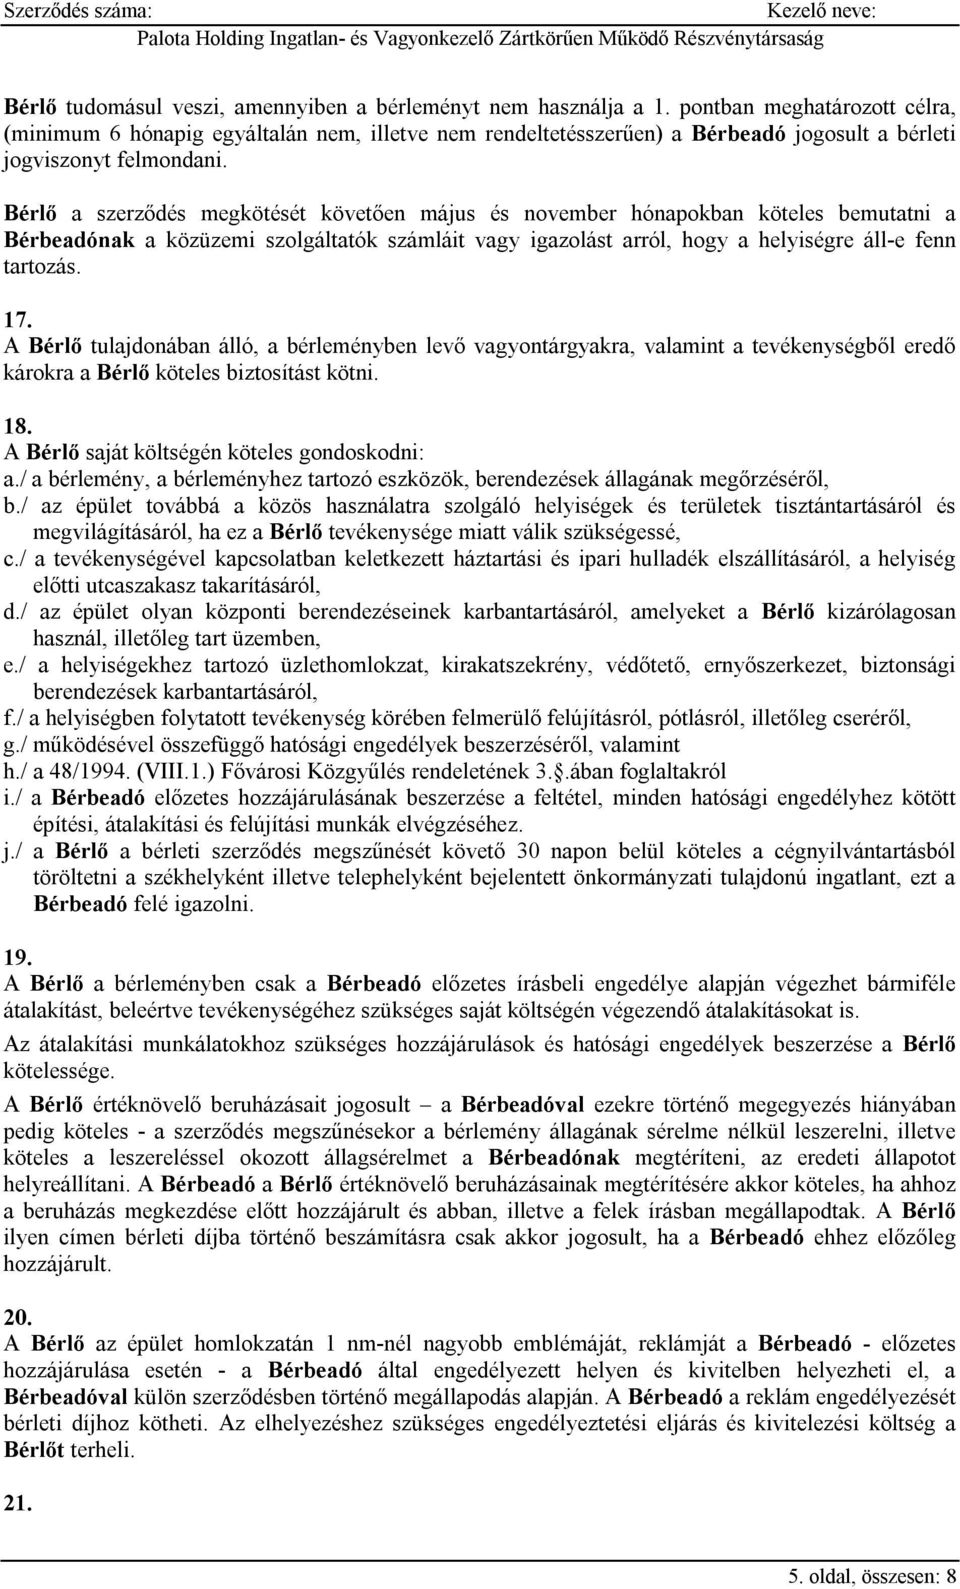 Helyiségbérleti szerződés minta - PDF Ingyenes letöltés